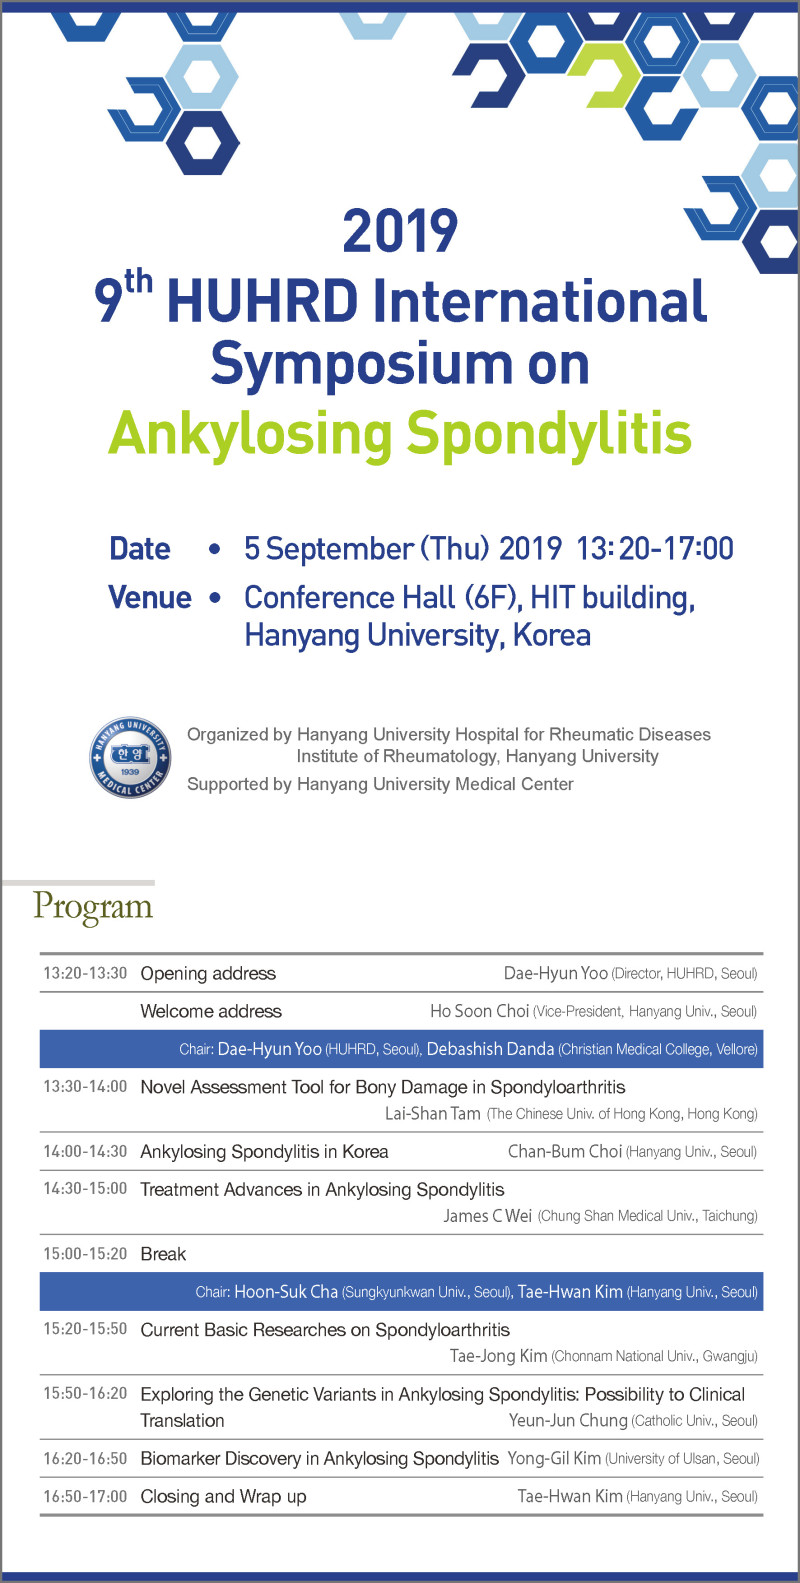 2019 9th HUHRD International Symposium on Ankylosing Spondylitis Program